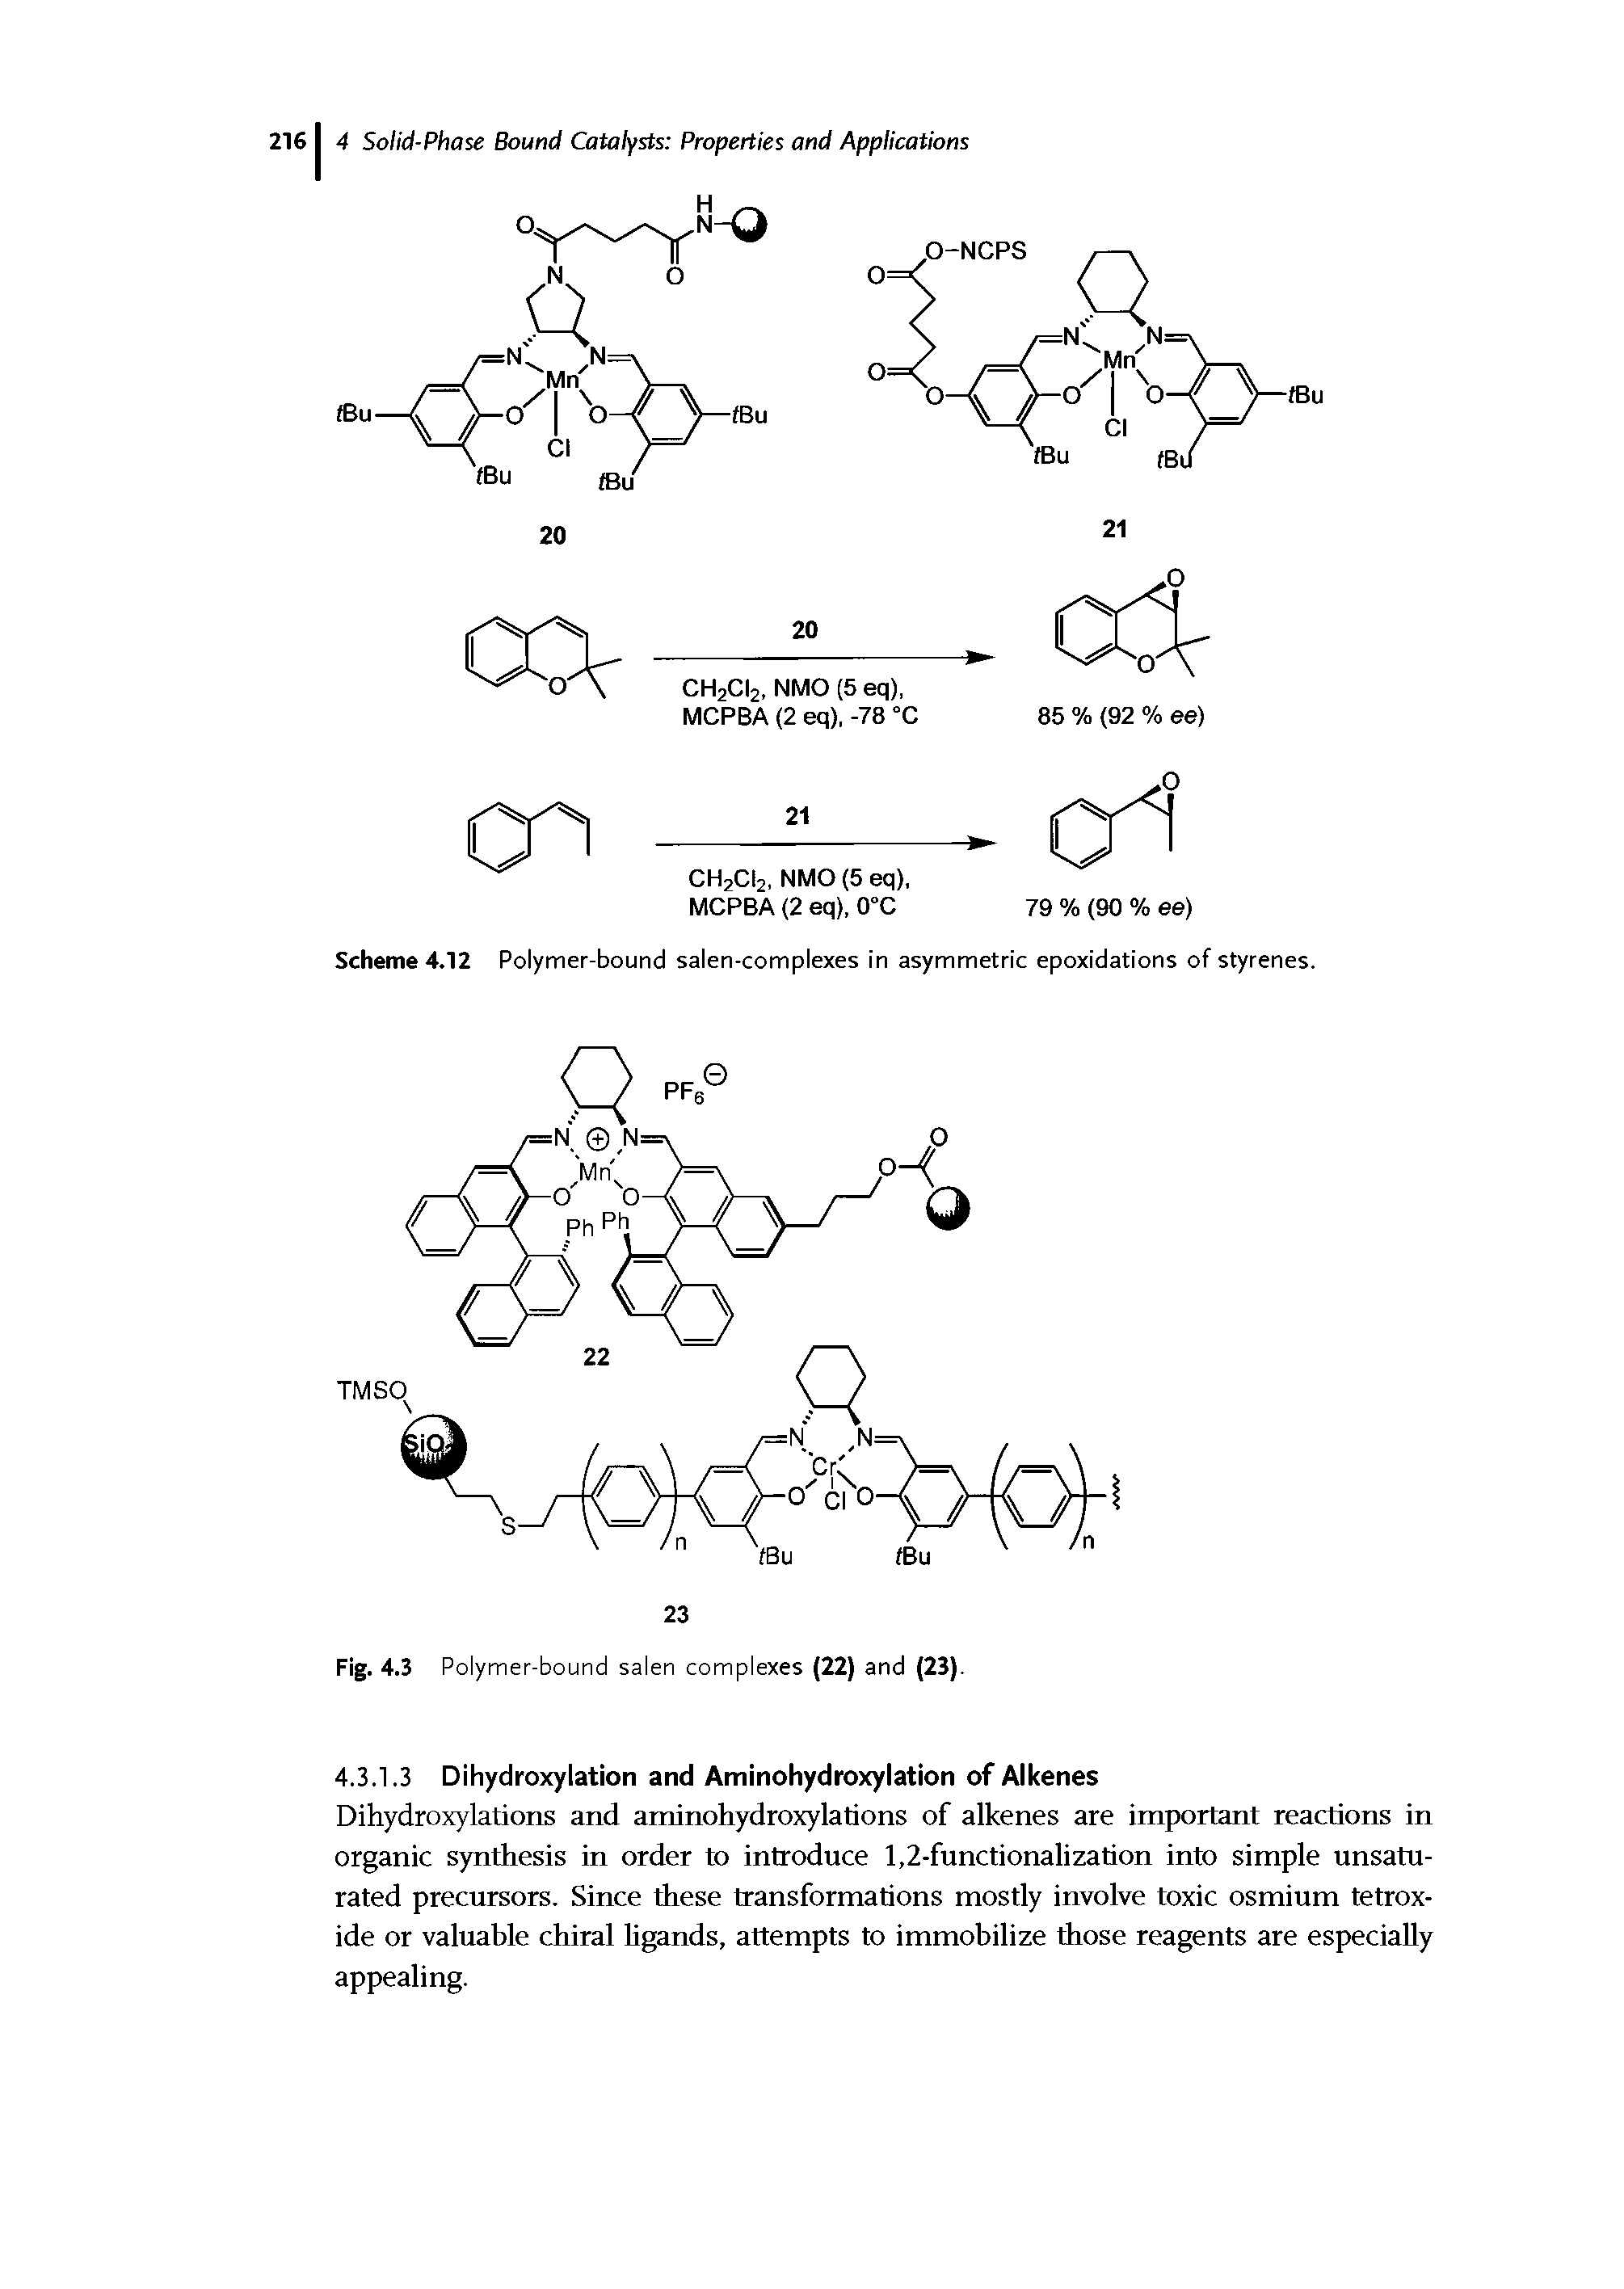 Scheme 4.12 Polymer-bound salen-complexes in asymmetric epoxidations of styrenes.